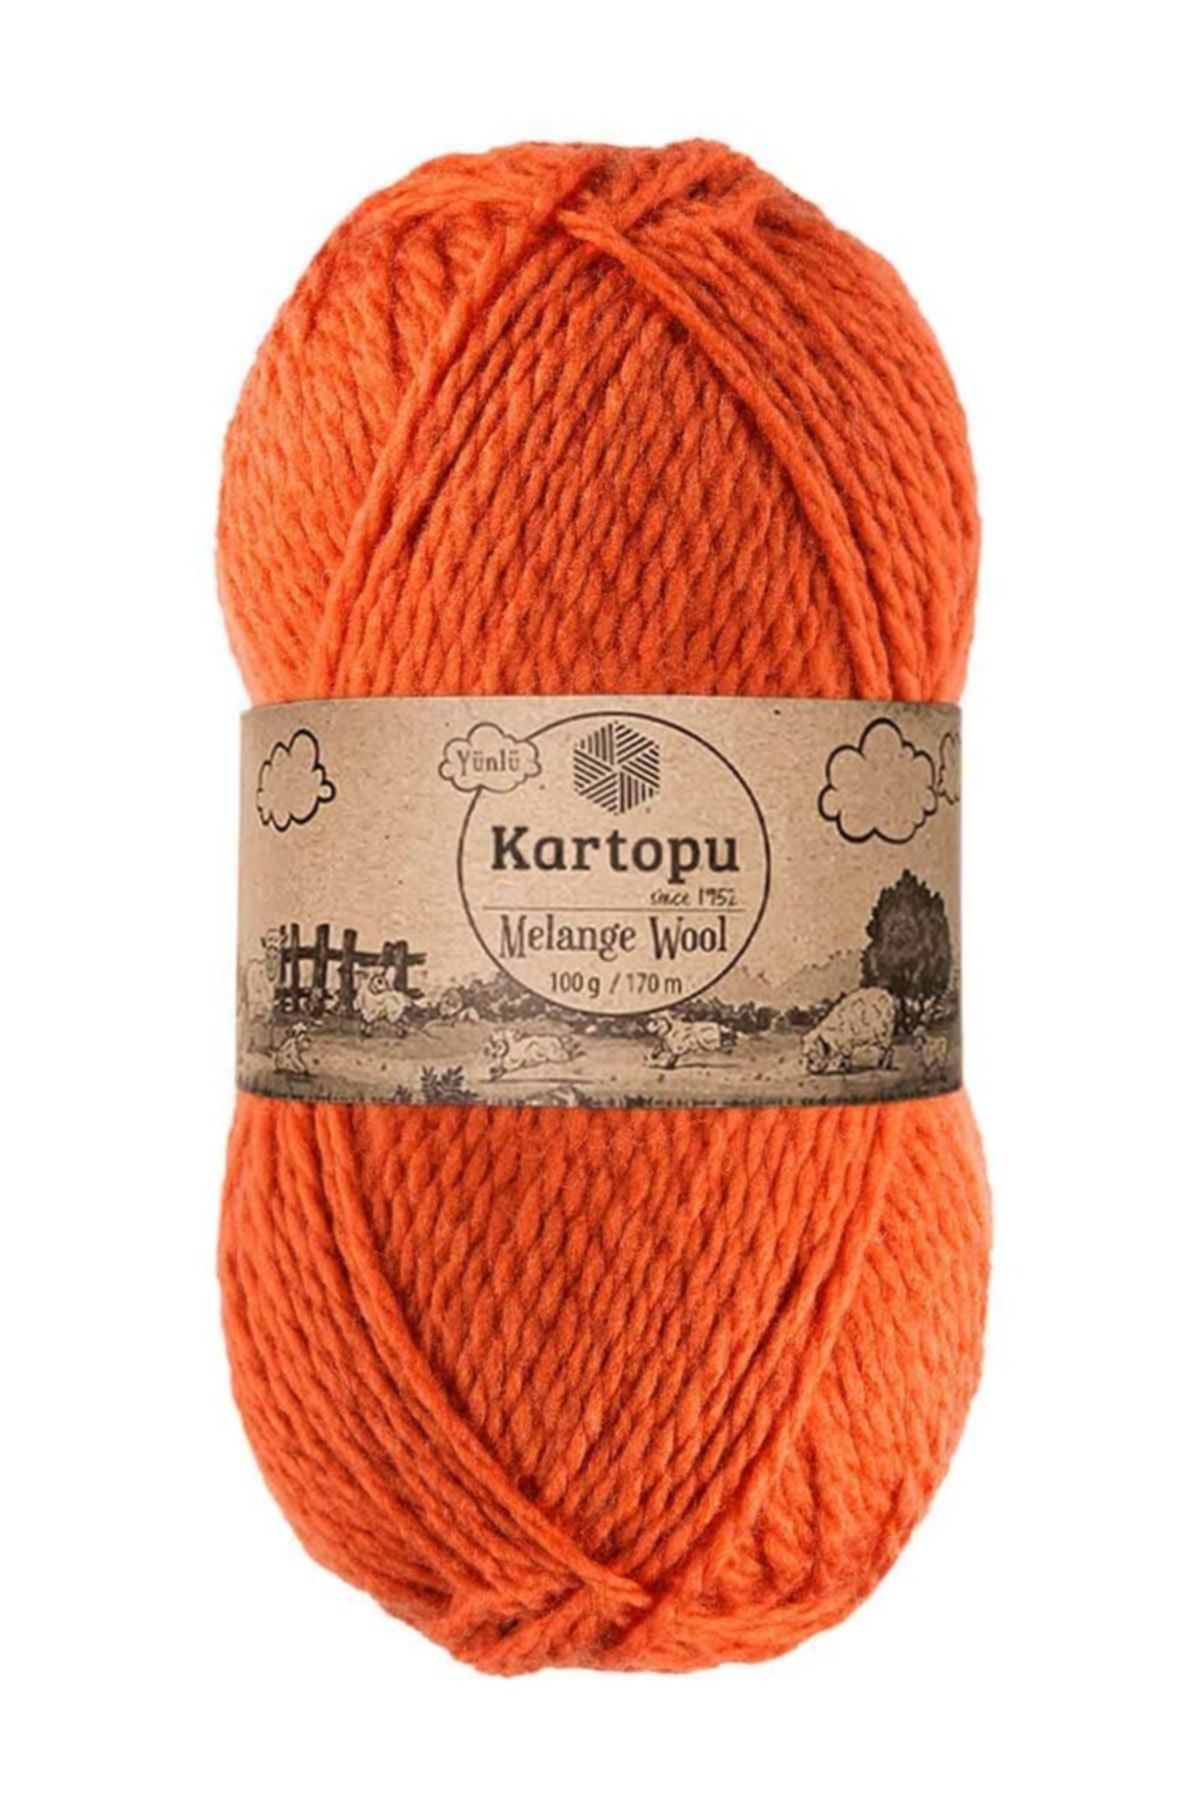 Kartopu Melange Wool El Örgü Ipi Turuncu K1210